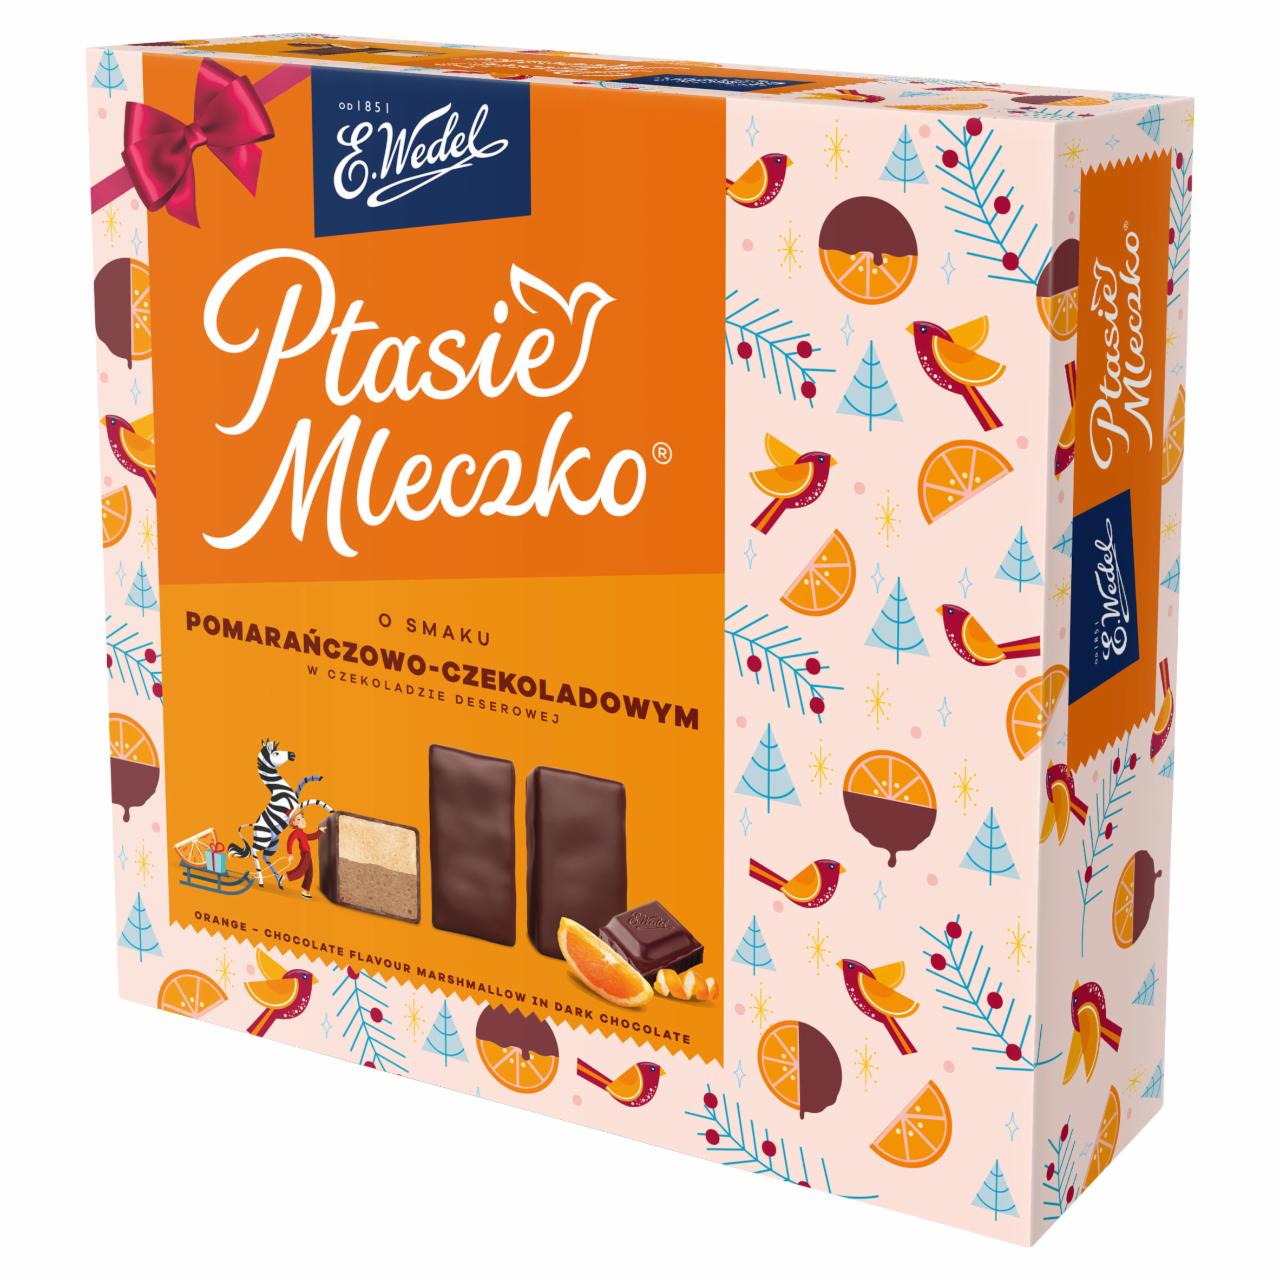 Zdjęcia - E. Wedel Ptasie Mleczko o smaku pomarańczowo-czekoladowym 360 g